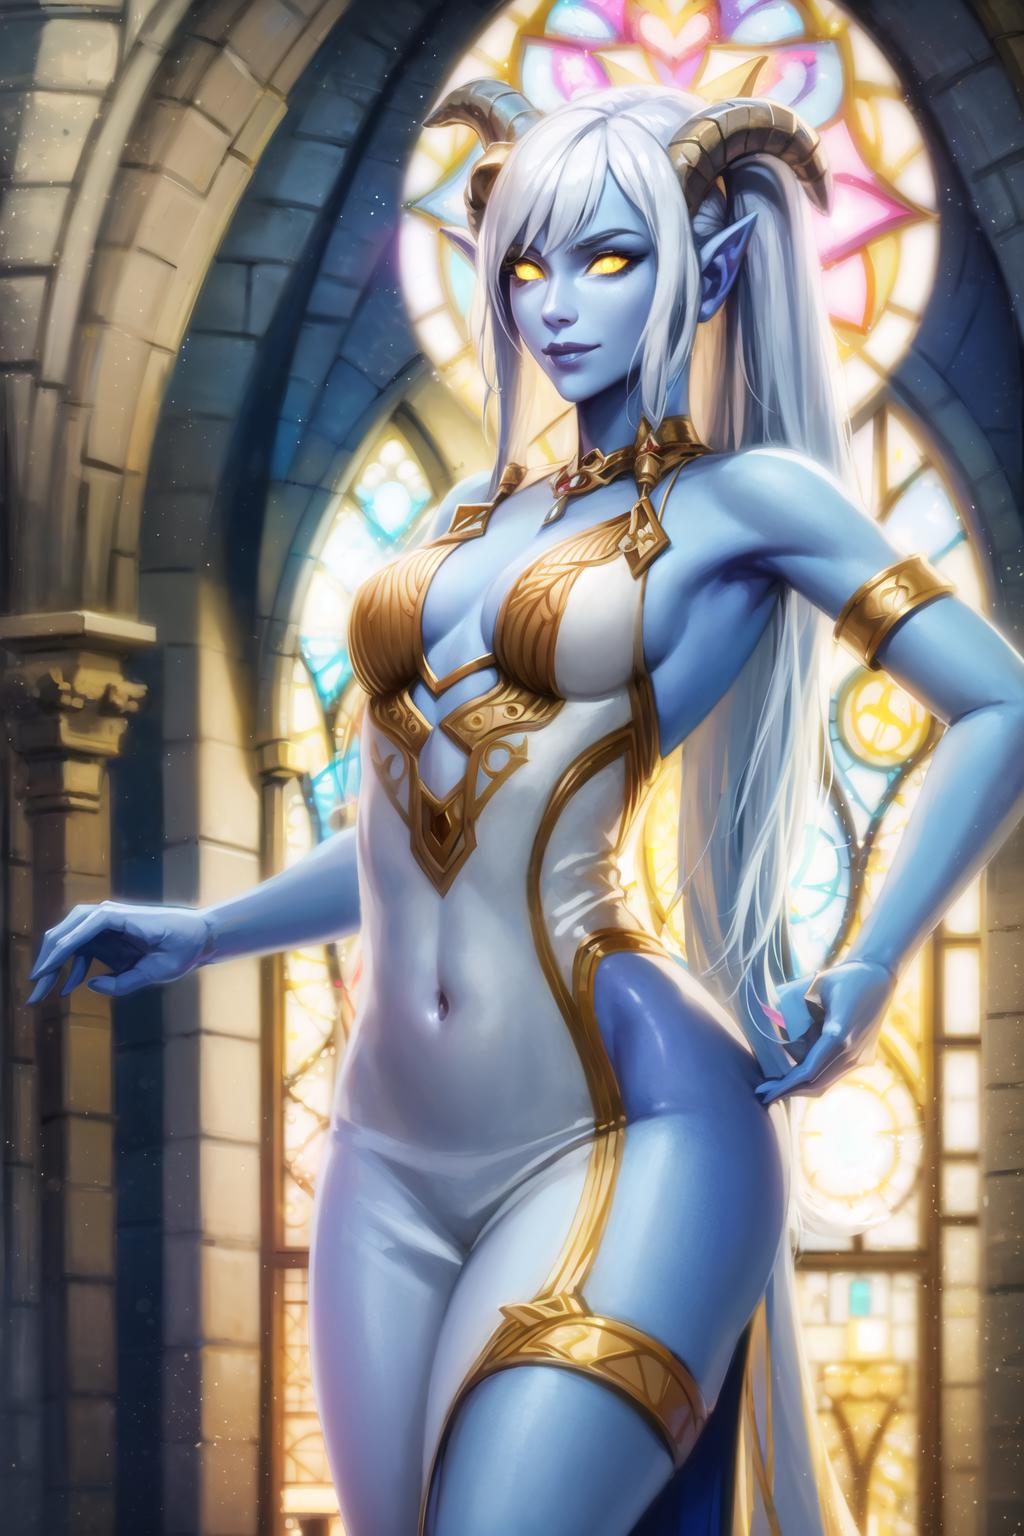 SXZ Draenei [ Warcraft ] image by Krudor